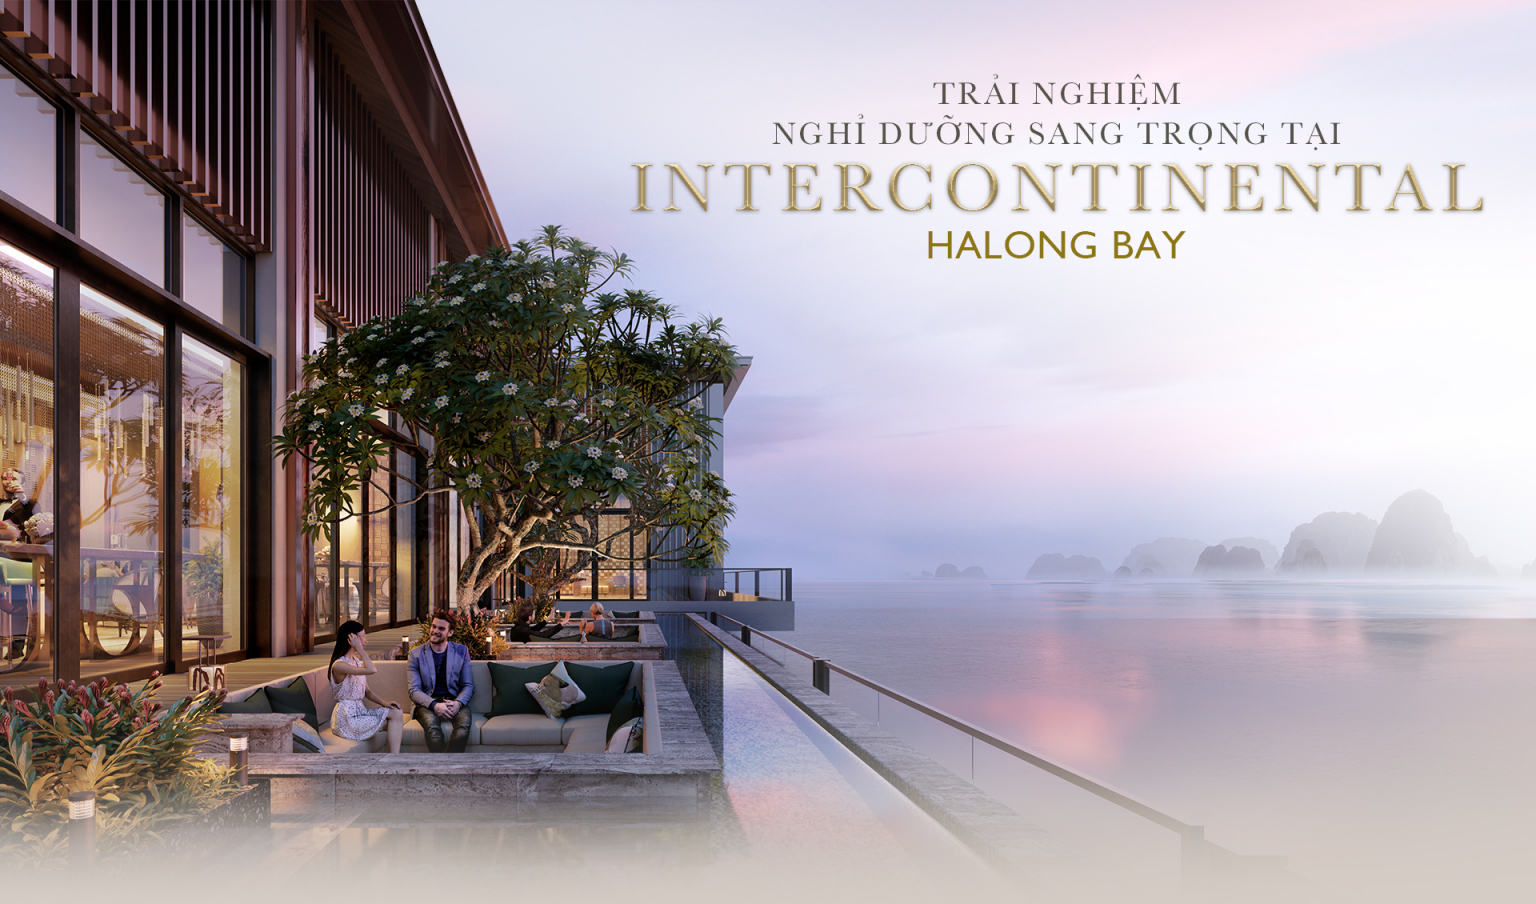 Trải nghiệm nghỉ dưỡng sang trọng tại Intercontinental Halong Bay